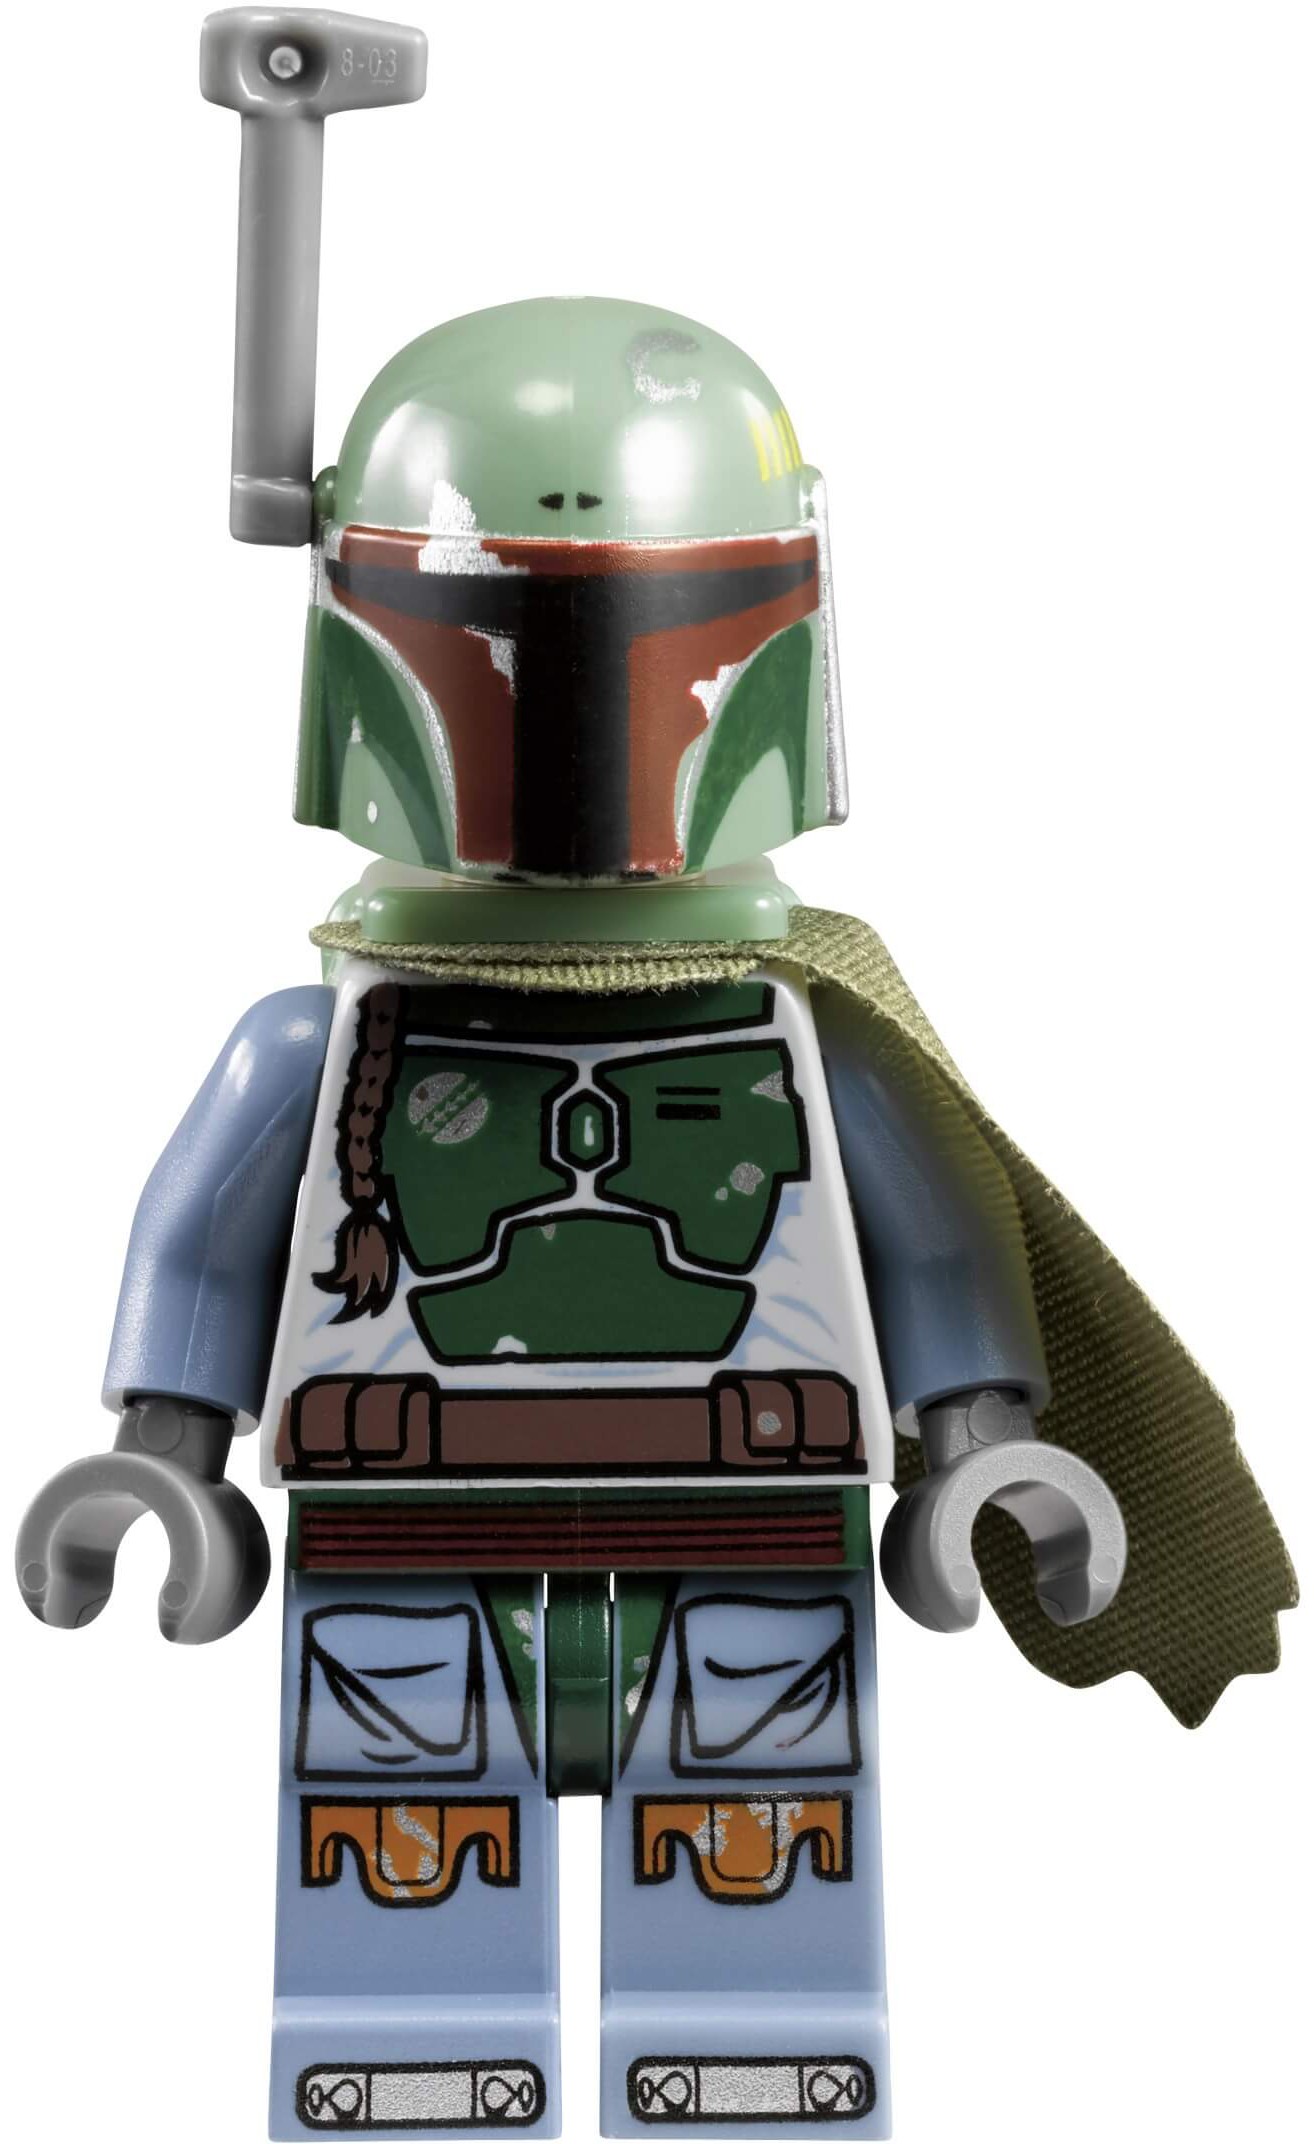 Download LEGO Star Wars - Boba Fett Minifigure Watch - Heromic